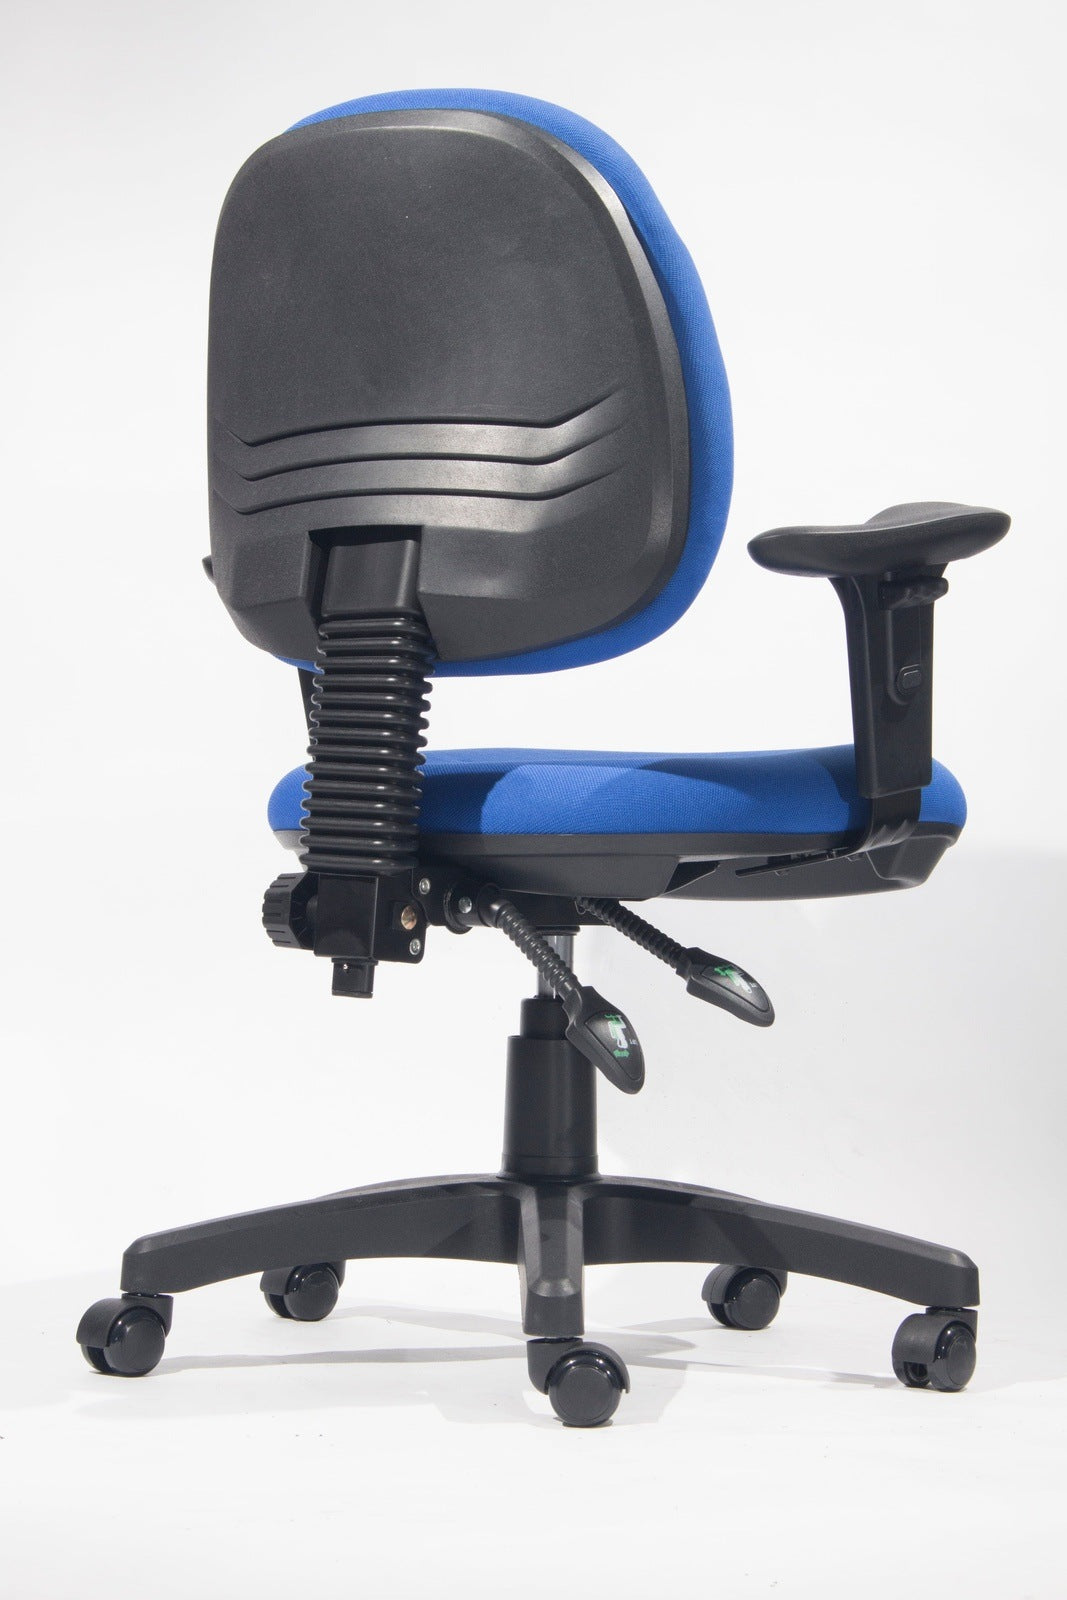 BSJ-52009 布背椅配固定扶手👍